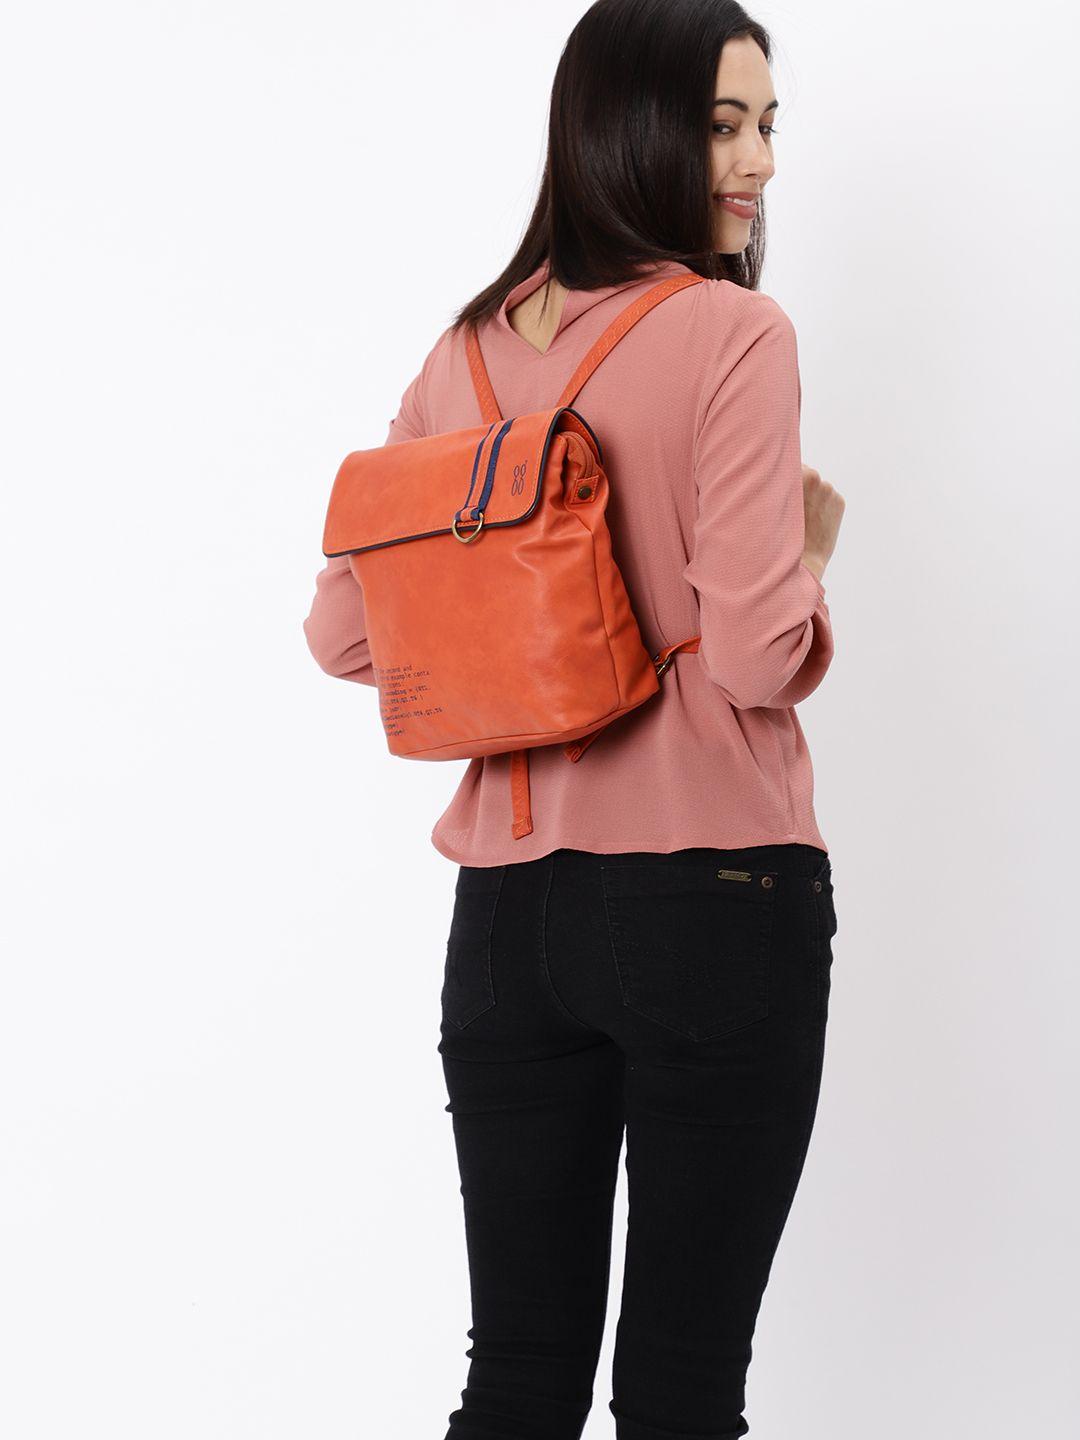 baggit-women-orange-backpack